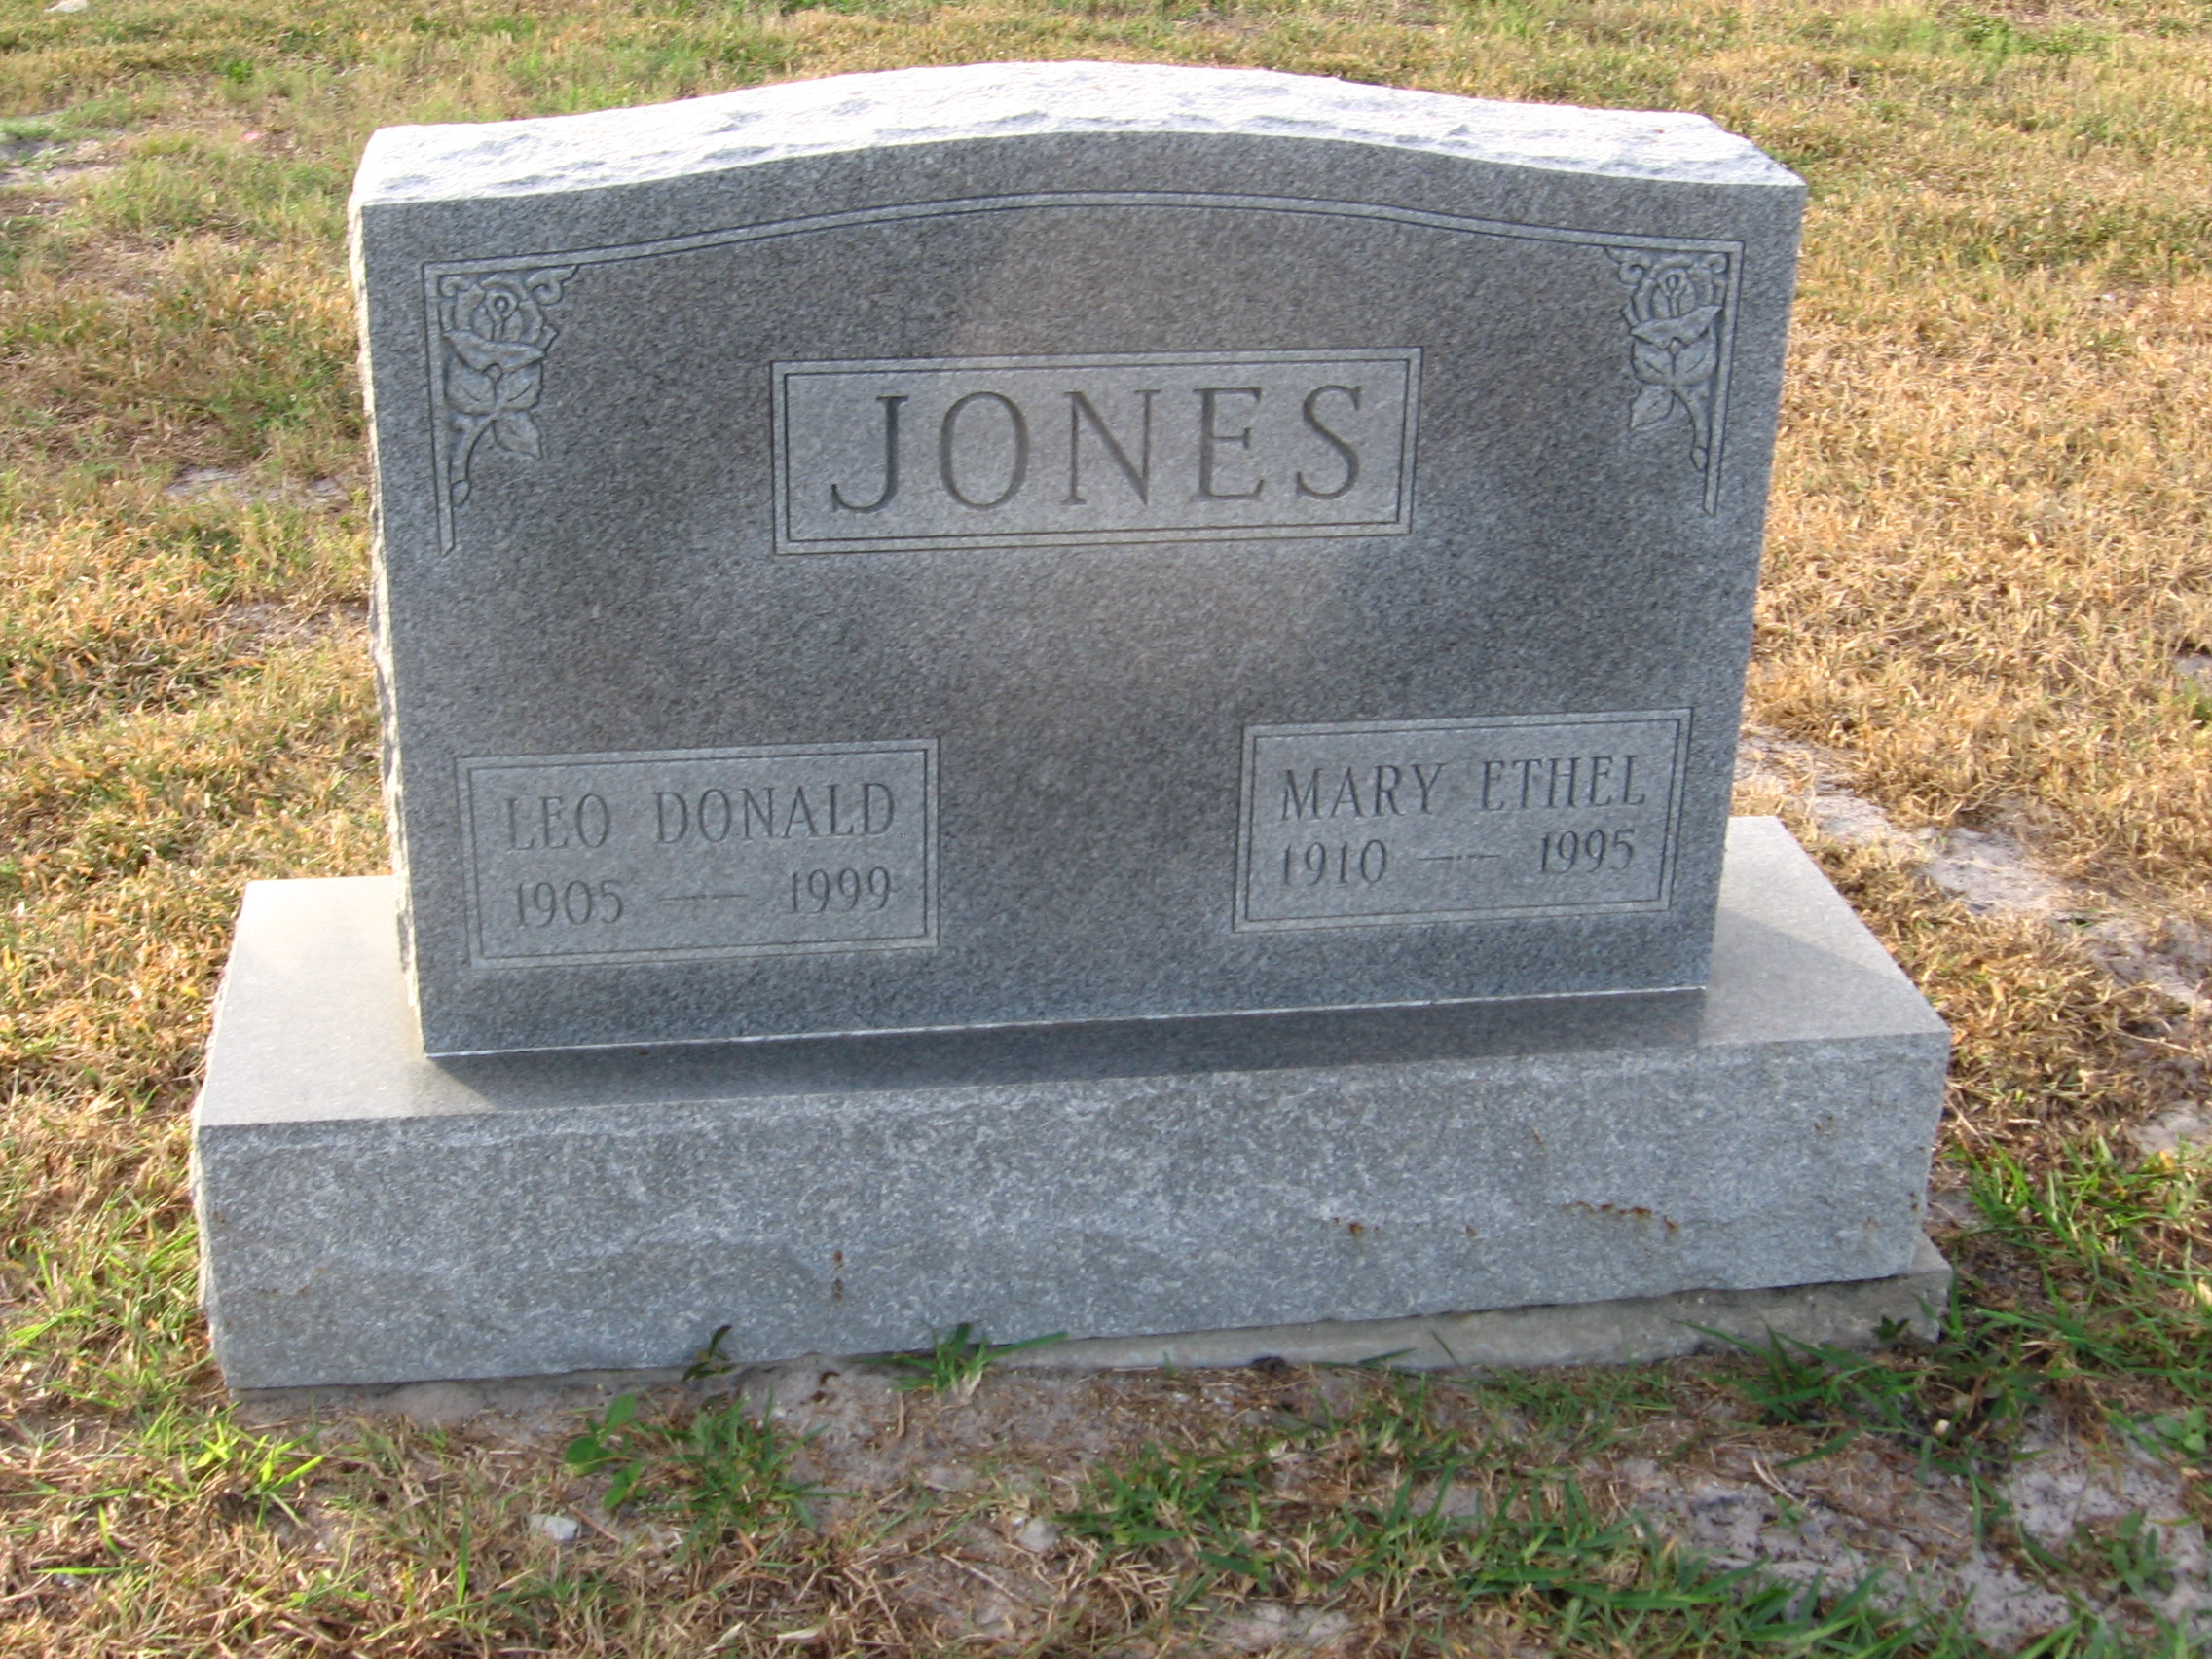 Mary Ethel Jones